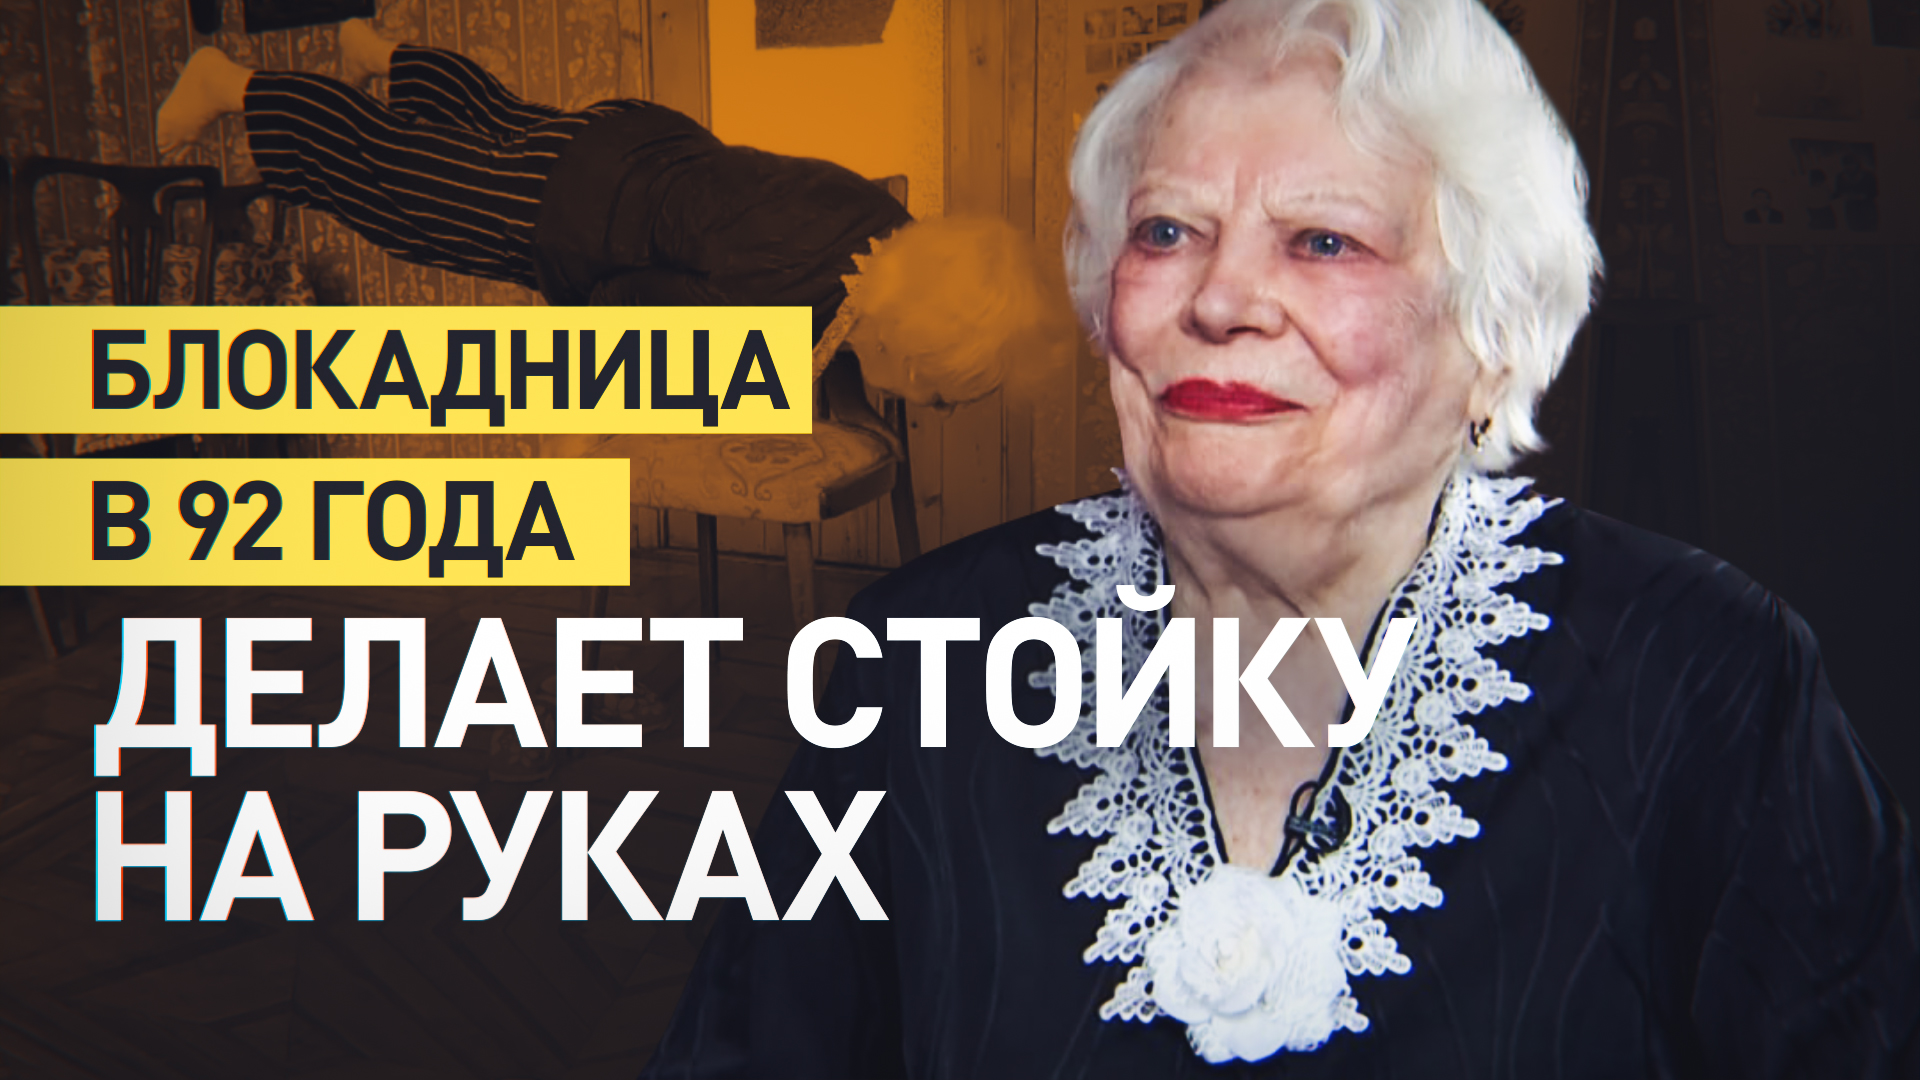 «Всё время занимаюсь гимнастикой»: ветеран Людмила Пирогова в 92 года выполняет стойку на руках